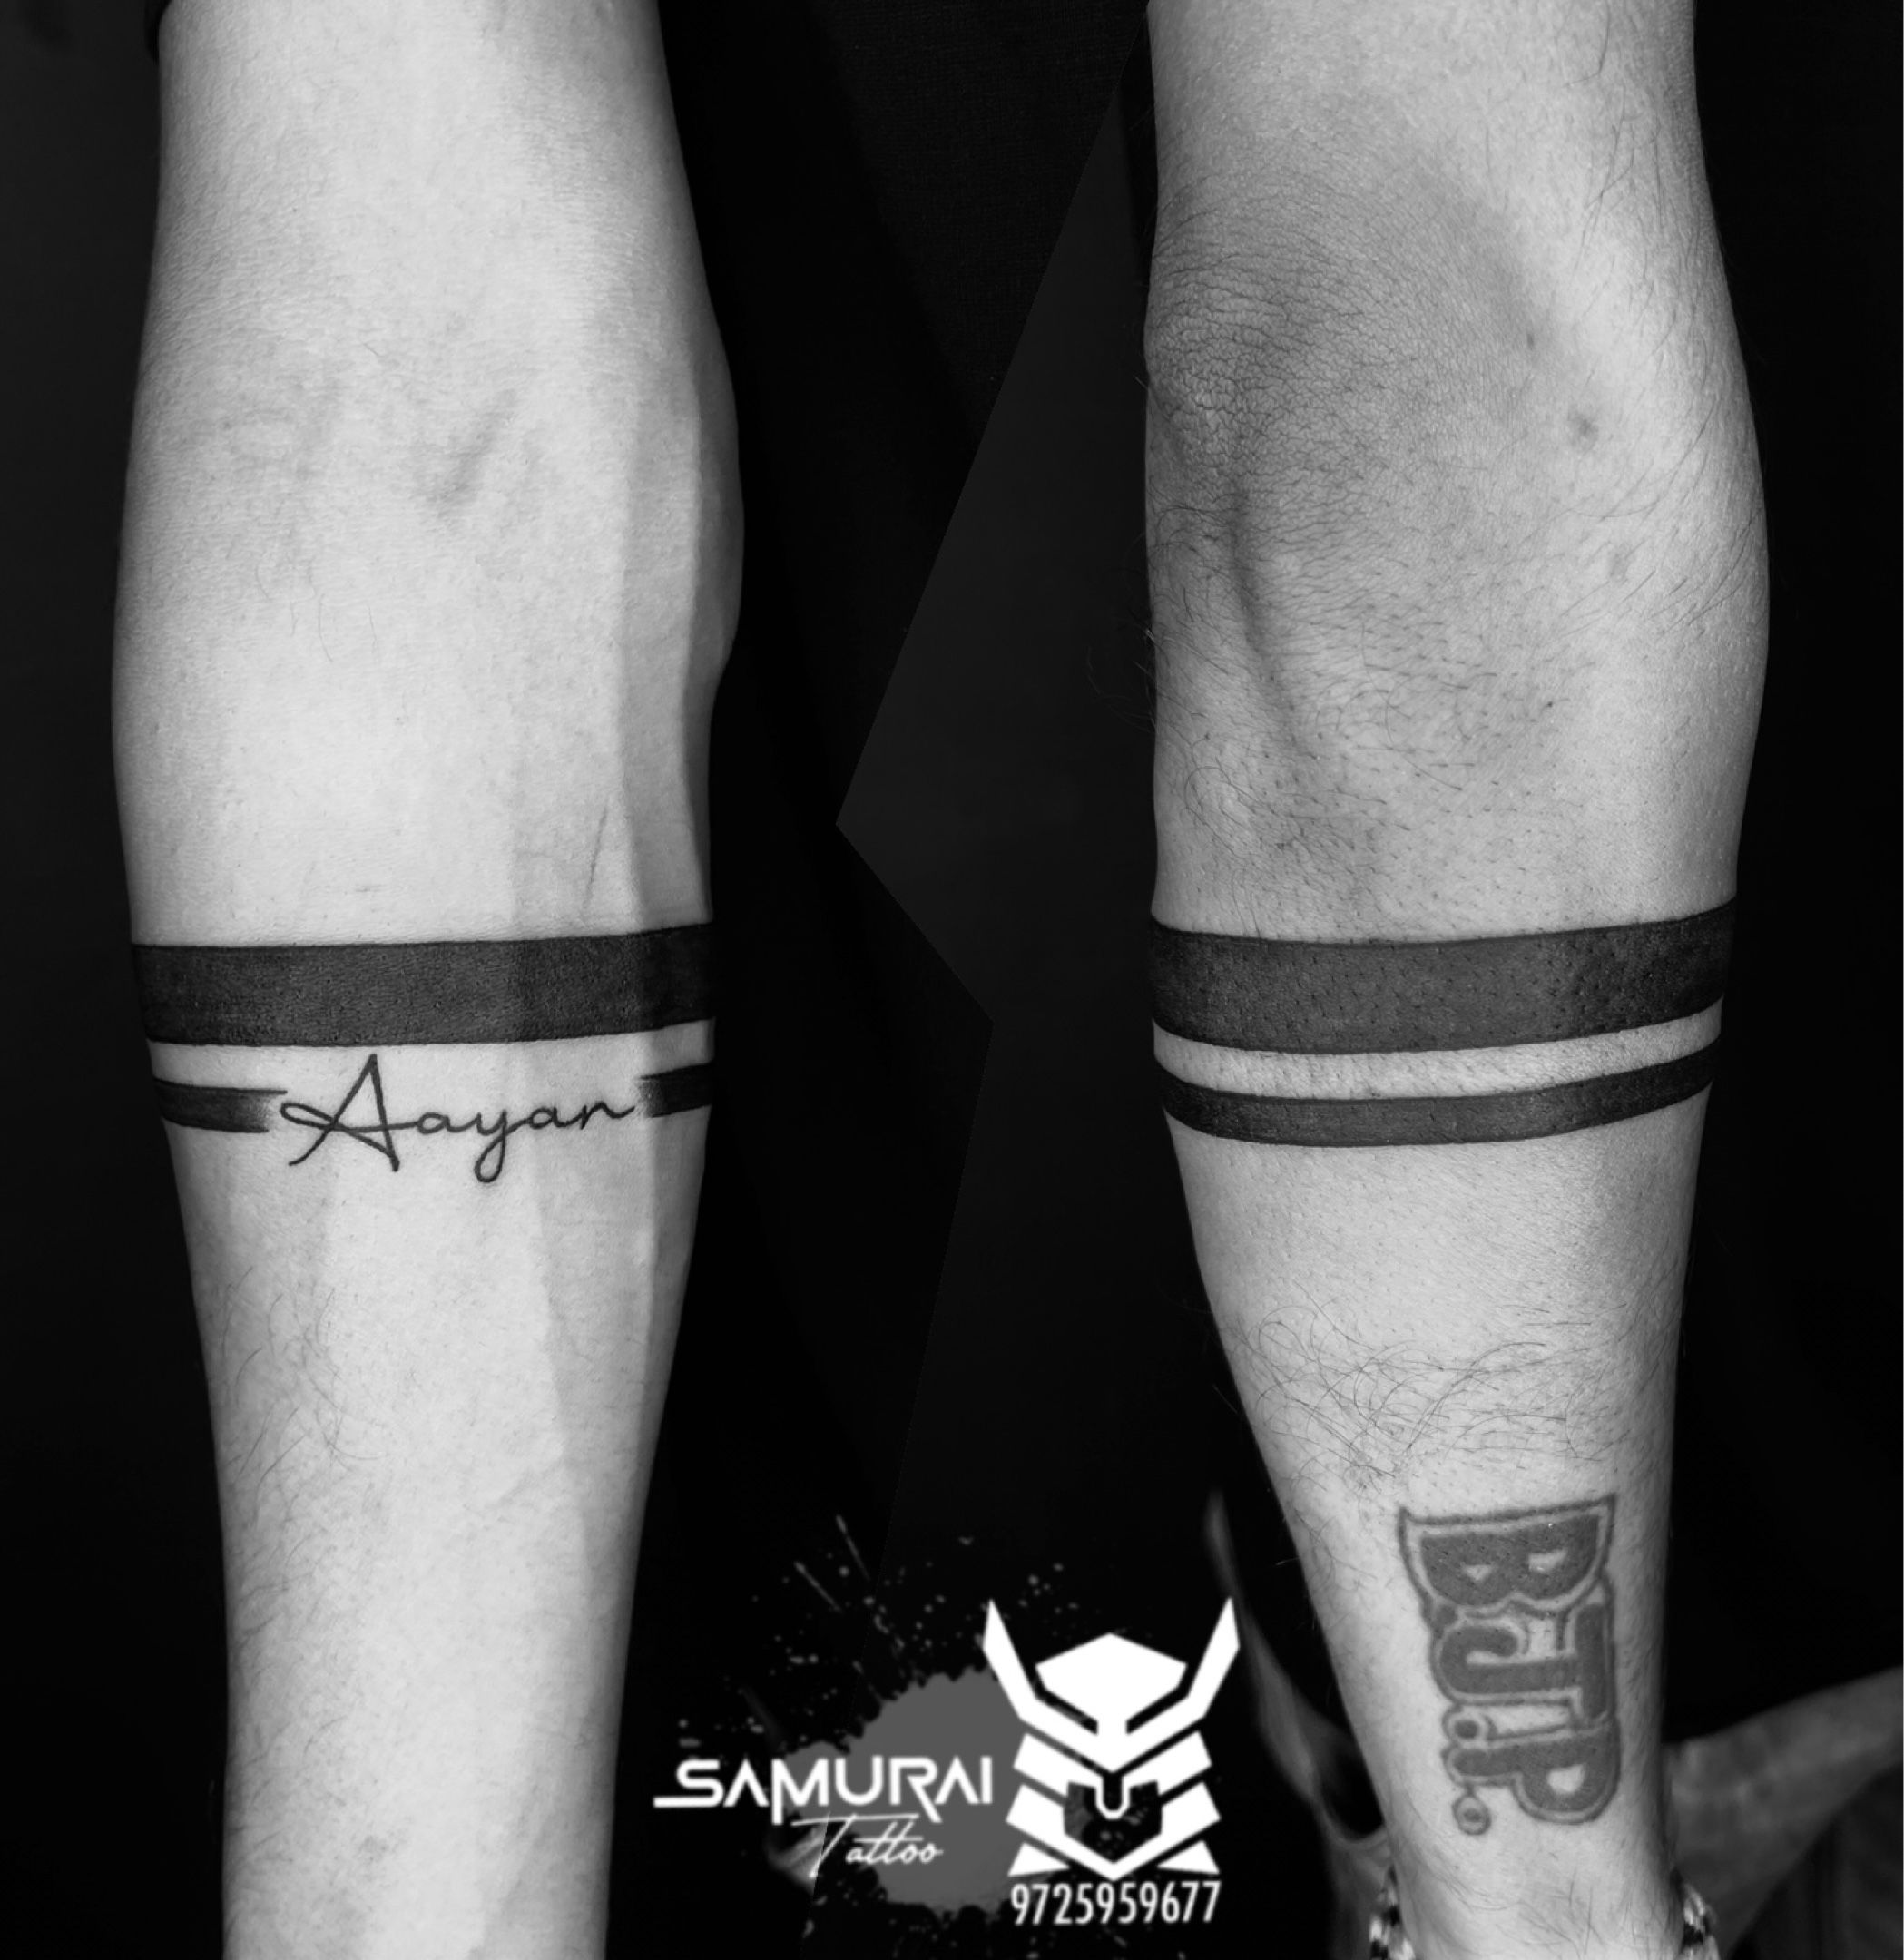 VOORKOMS Roman Forearm Hand Band Best Waterproof Men and Women Temporary  Body Tattoo  Amazonin Beauty